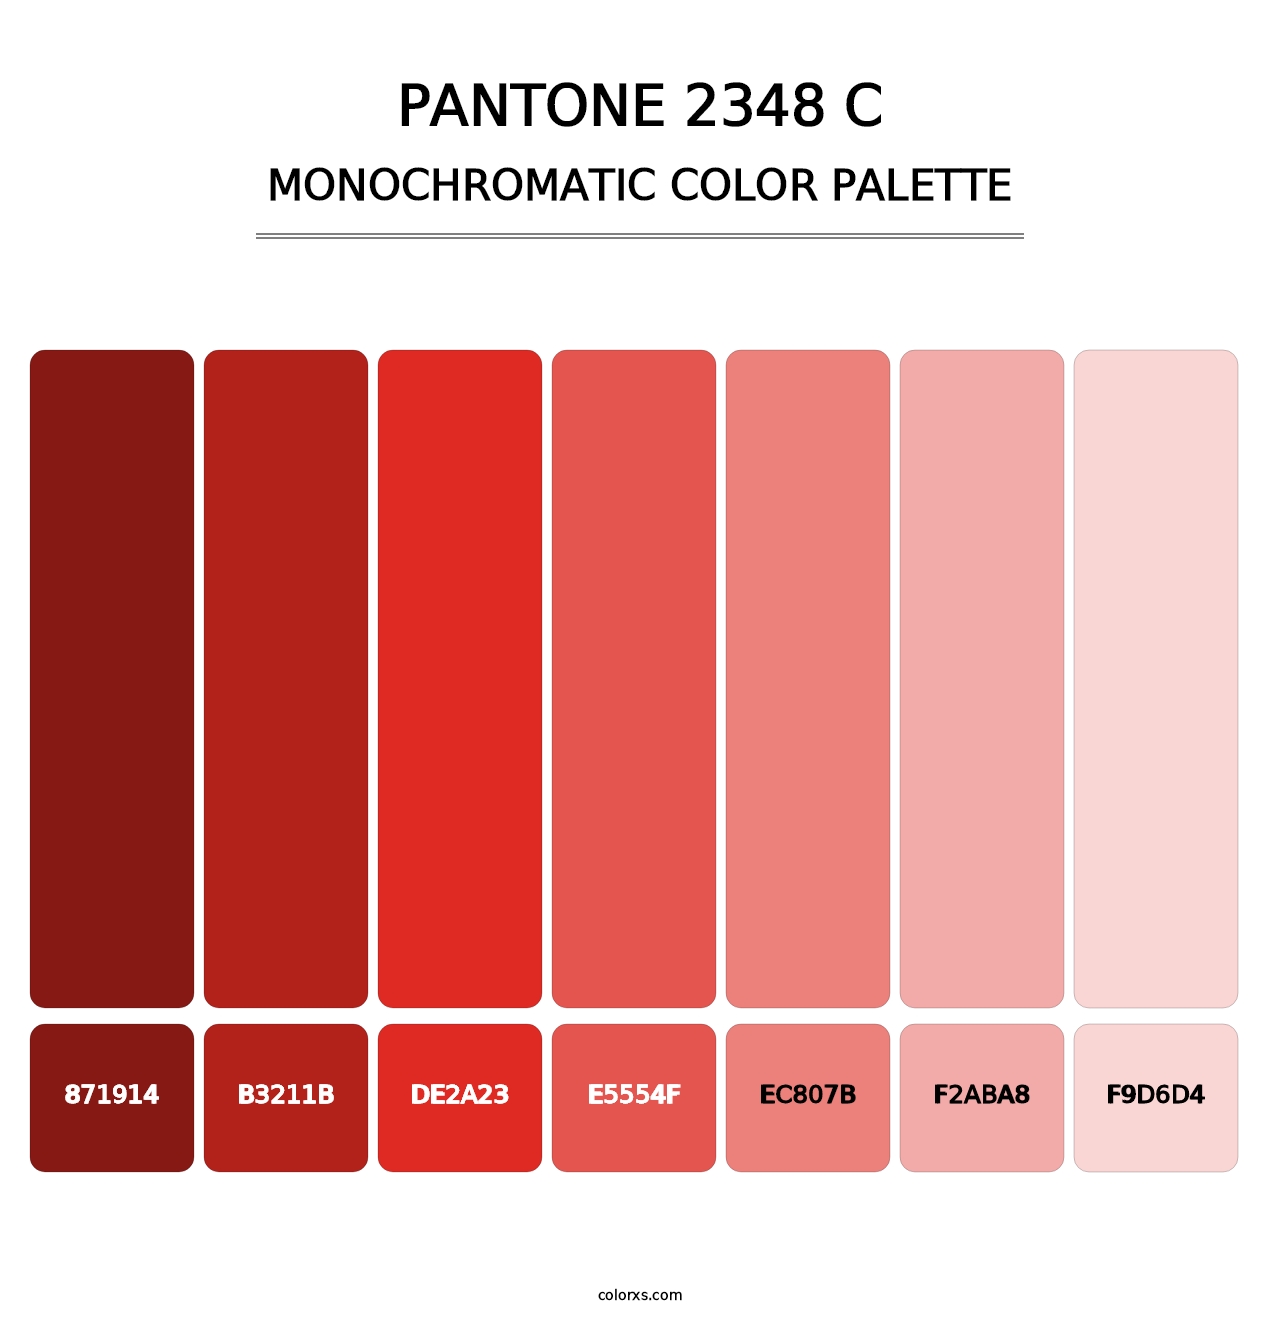 PANTONE 2348 C - Monochromatic Color Palette